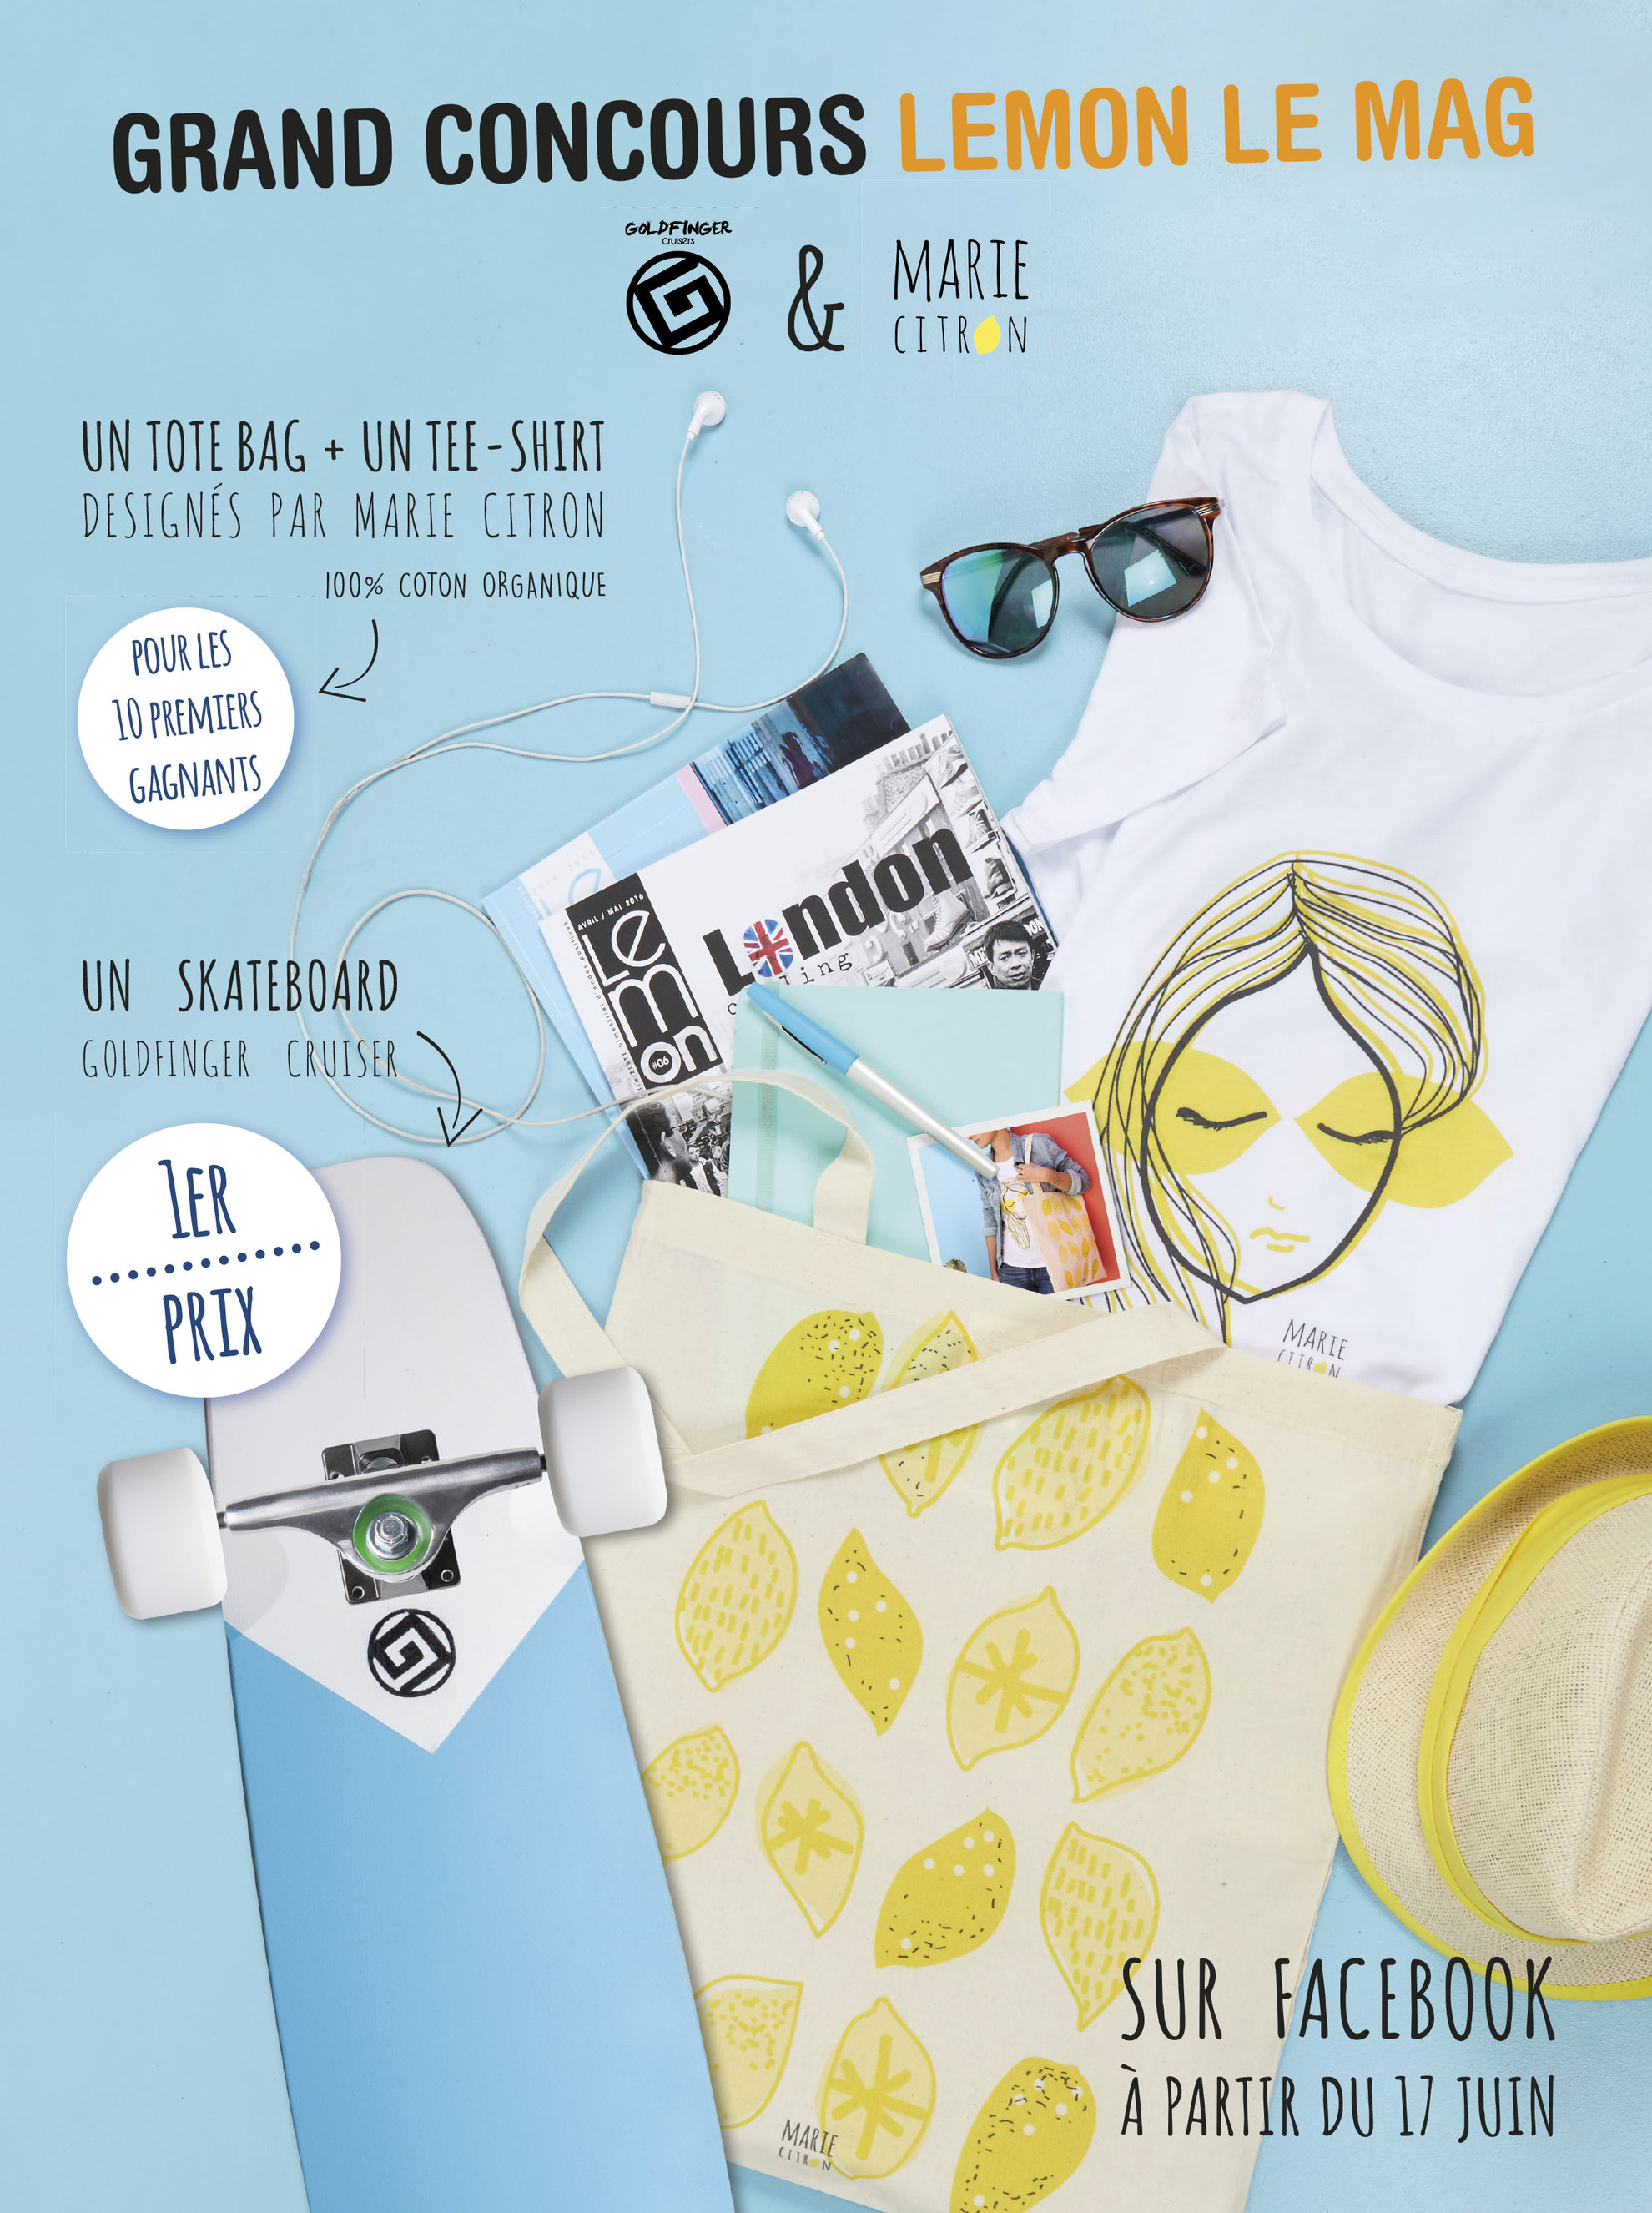 Lemon Le Mag - Illustration sur tee-shirt et tote bag - Création de la marque Marie Citron pour un concours